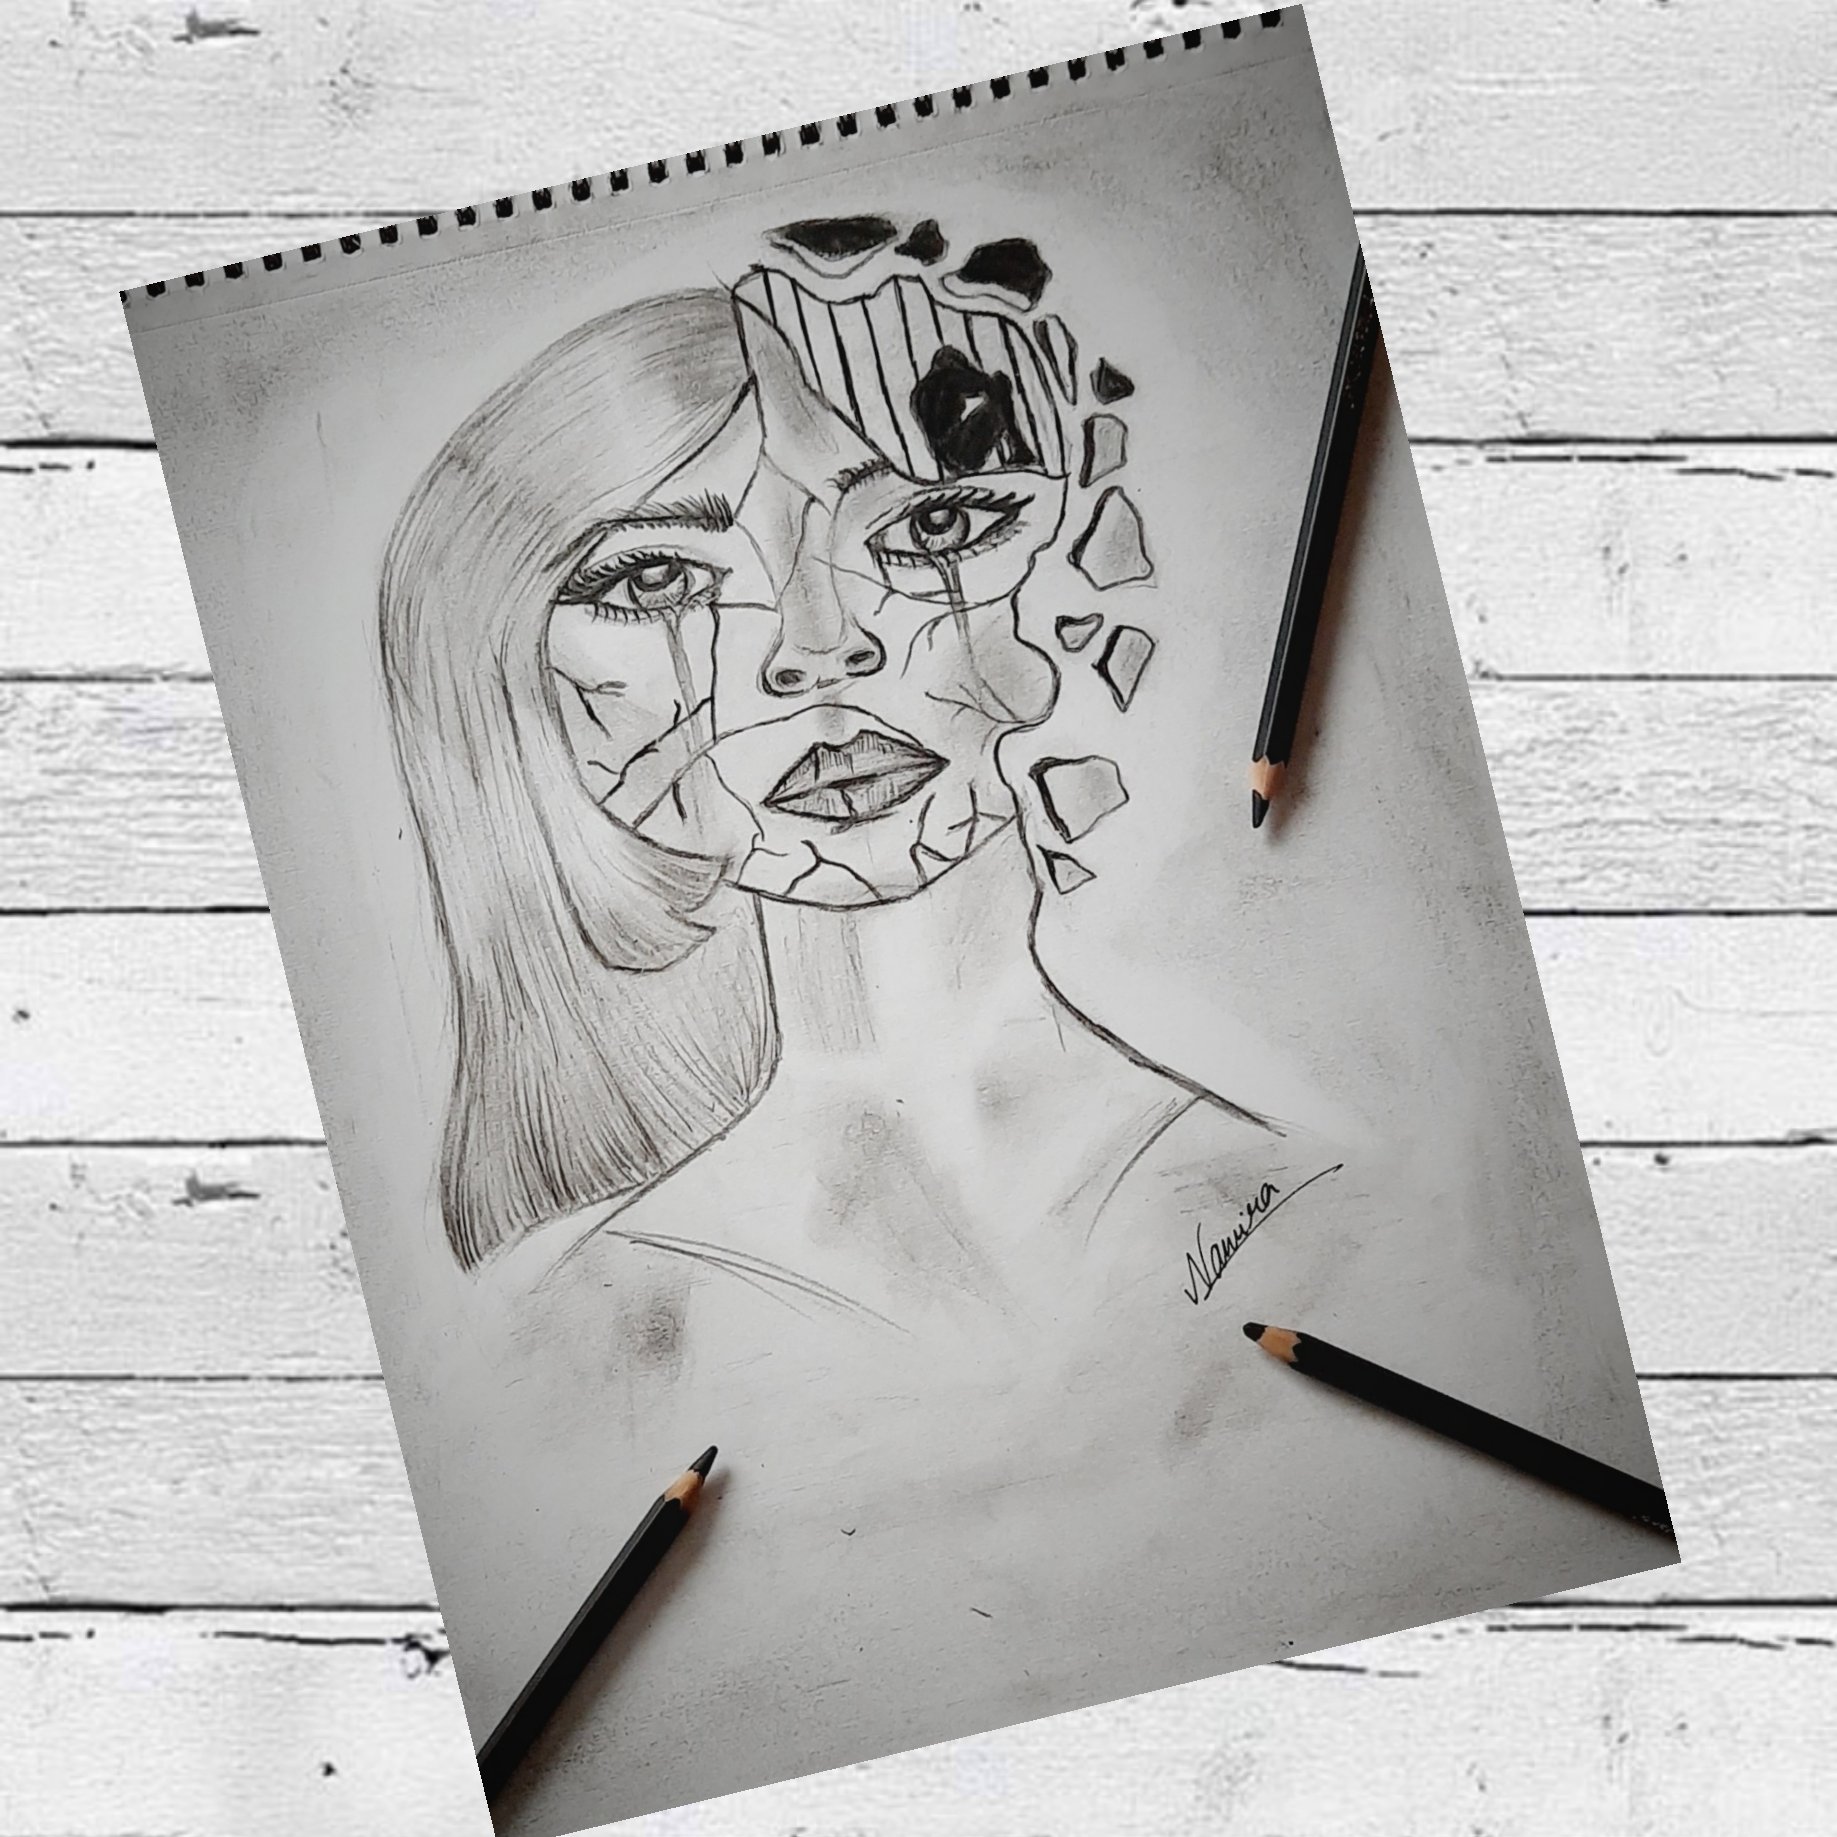 Broken glass effect on girls face drawingportrait of girl with broken  glassgirl face on glass  YouTube